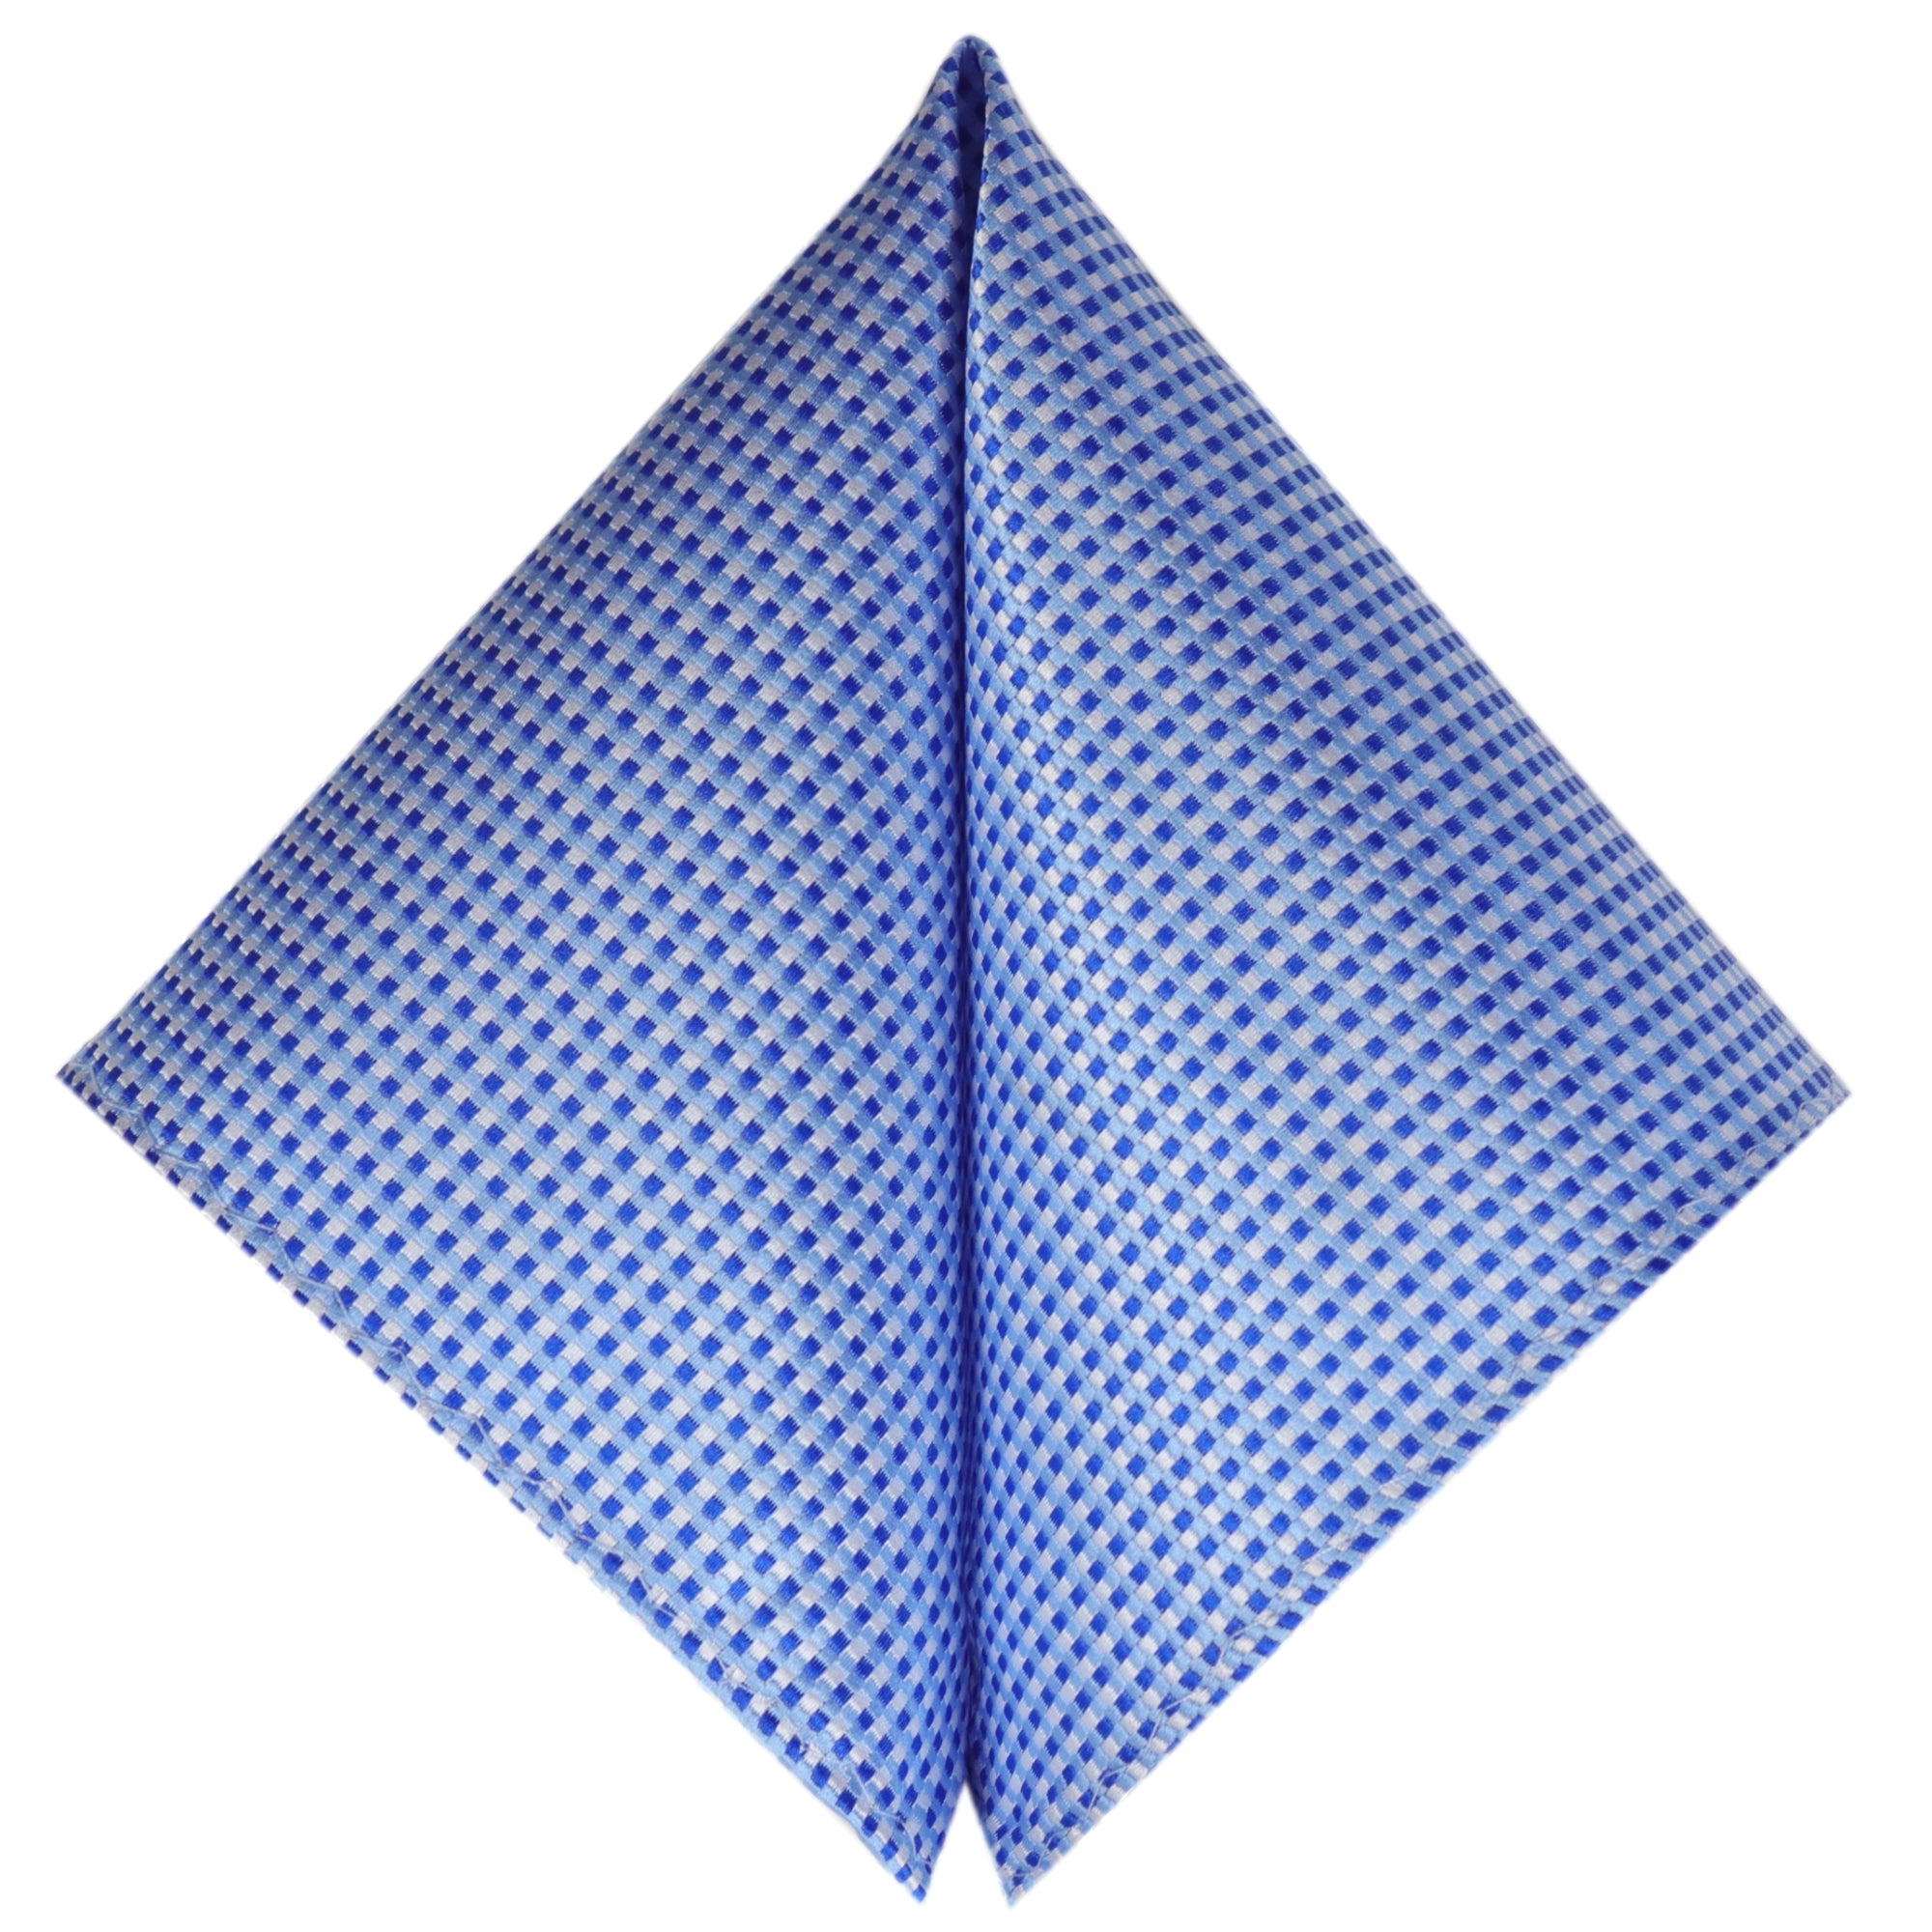 Kaufen Sie Blau-Weiss Karierte GASSANIshop - Krawatten Herren-Fliege! GASSANI im